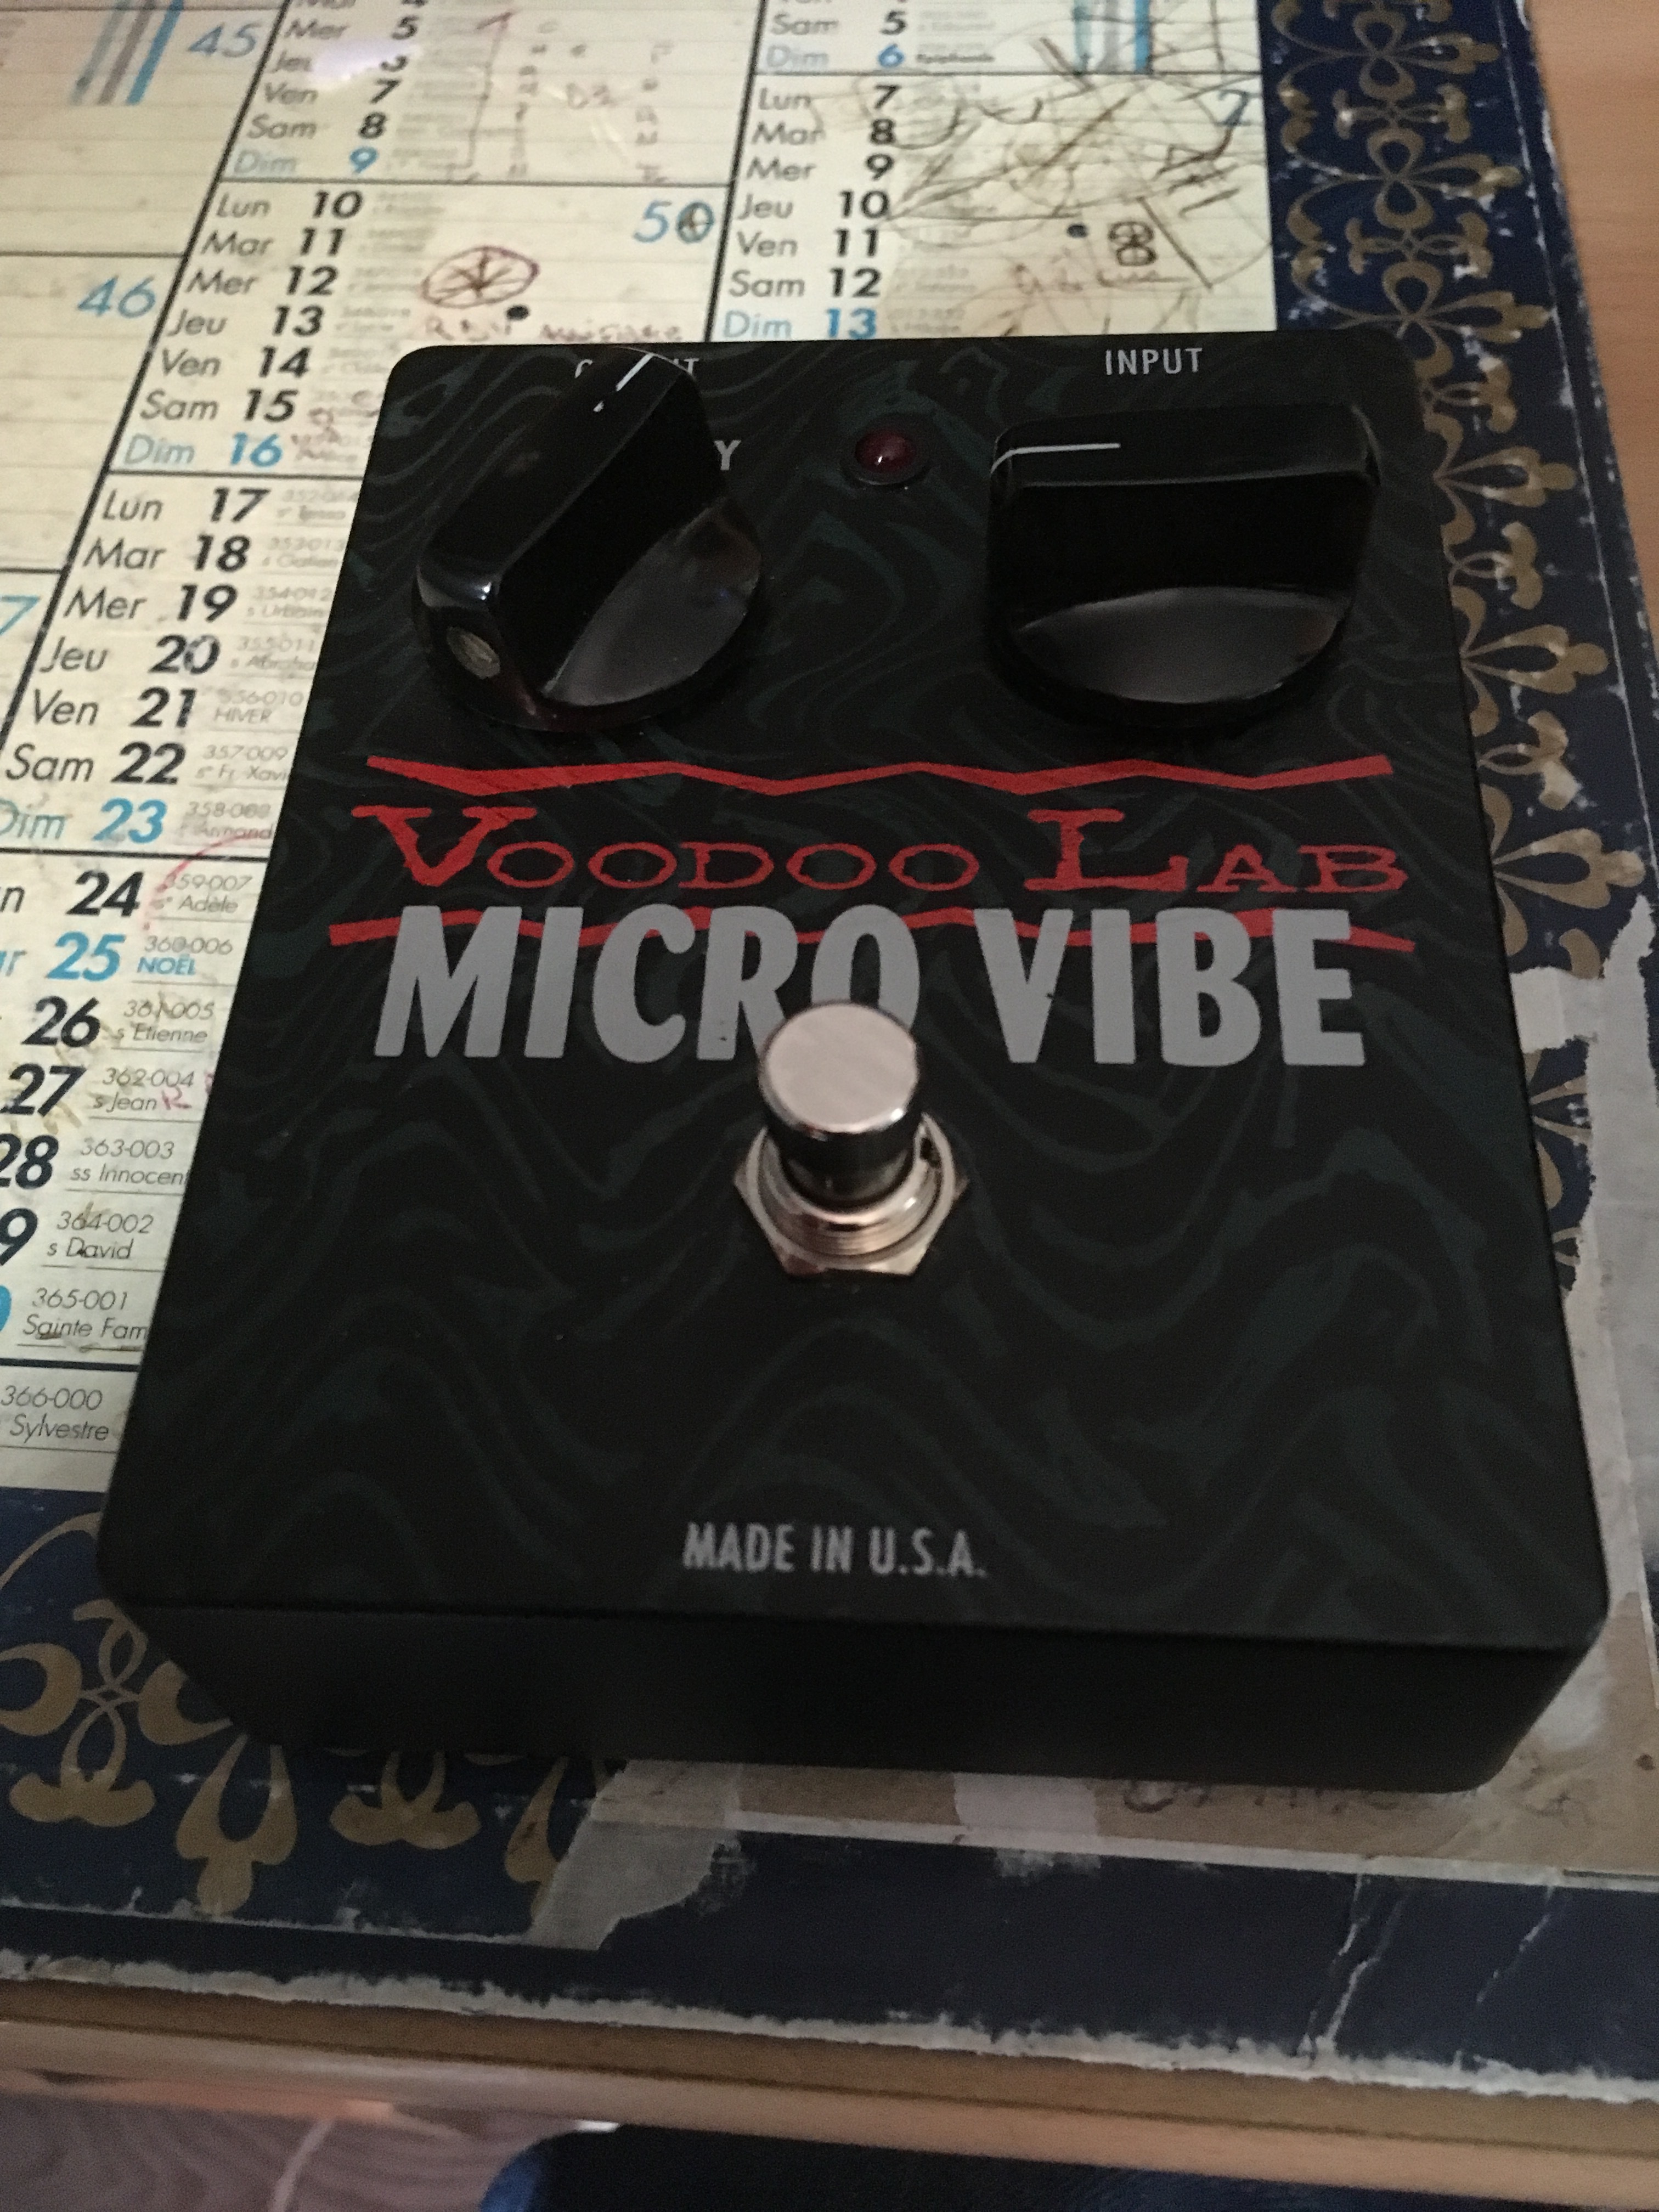 MICRO VIBE - Voodoo Lab Micro vibe - Audiofanzine